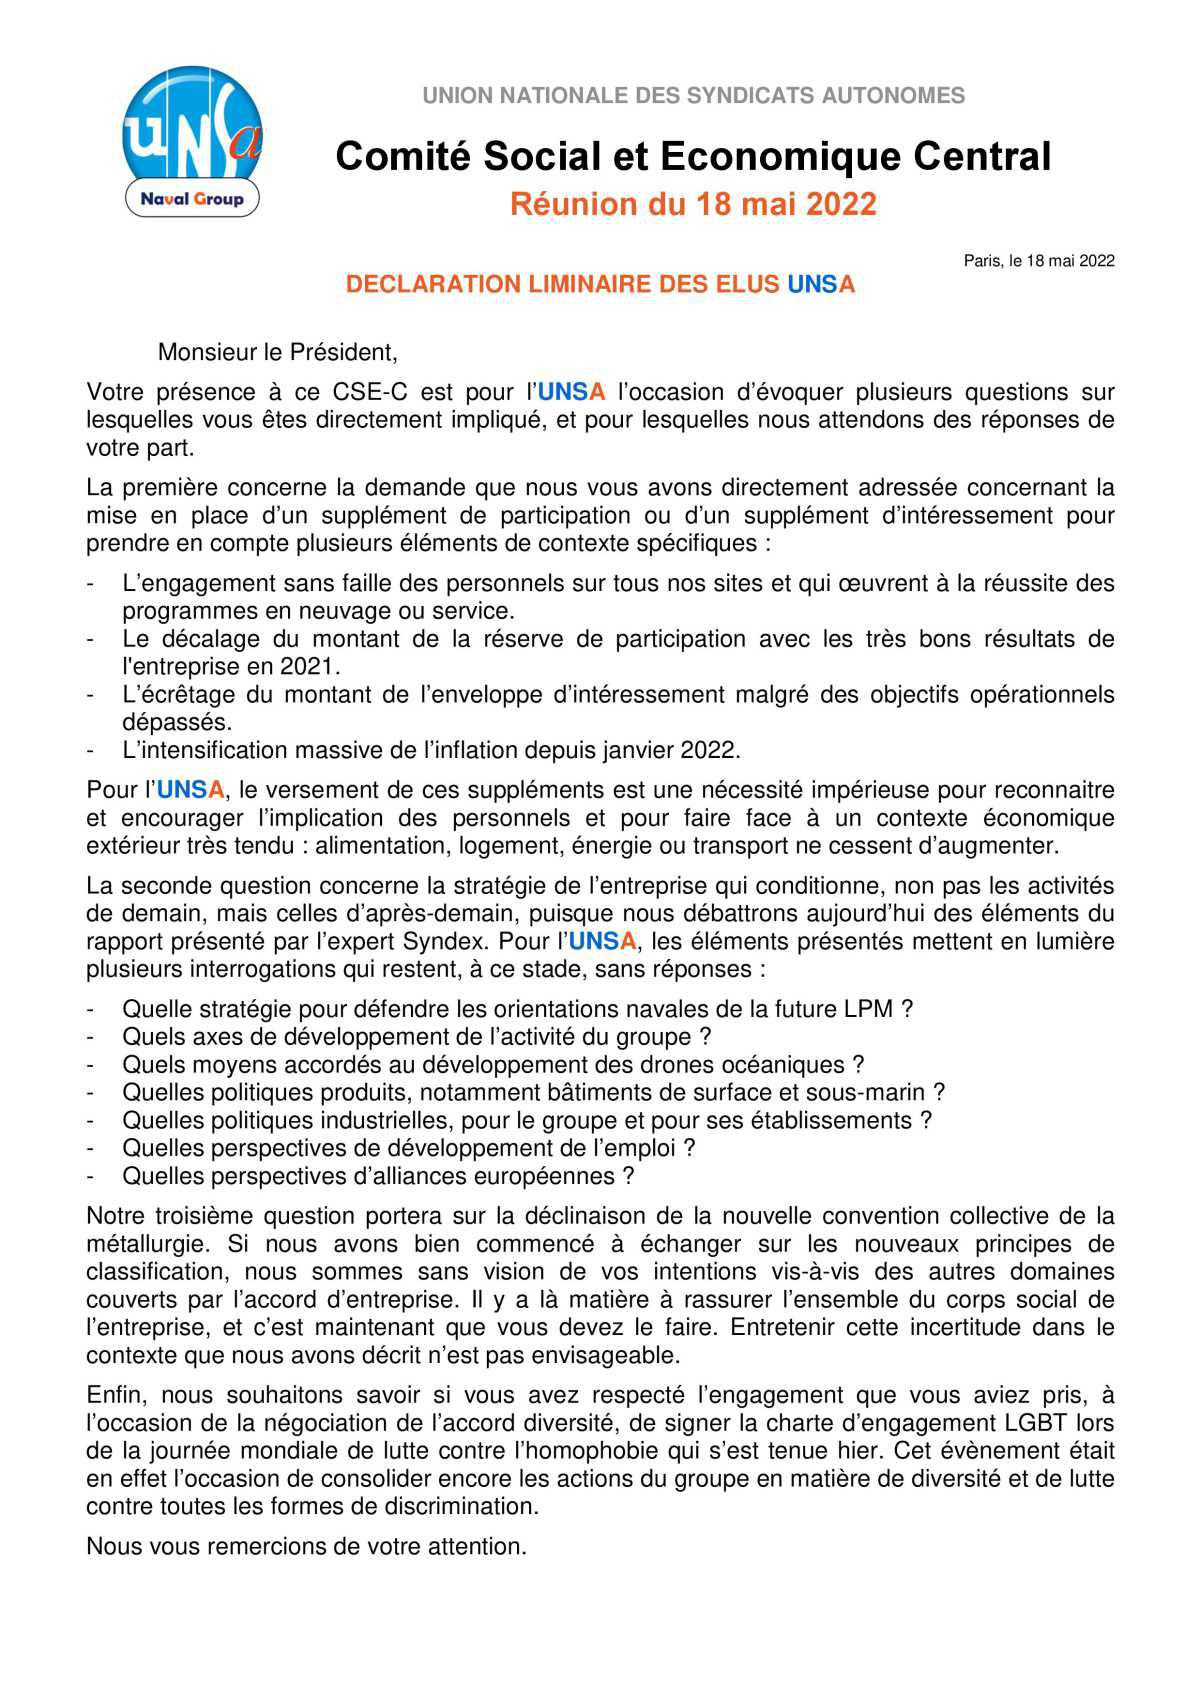 Réunion du 18 mai 2022 - Déclaration liminaire UNSA